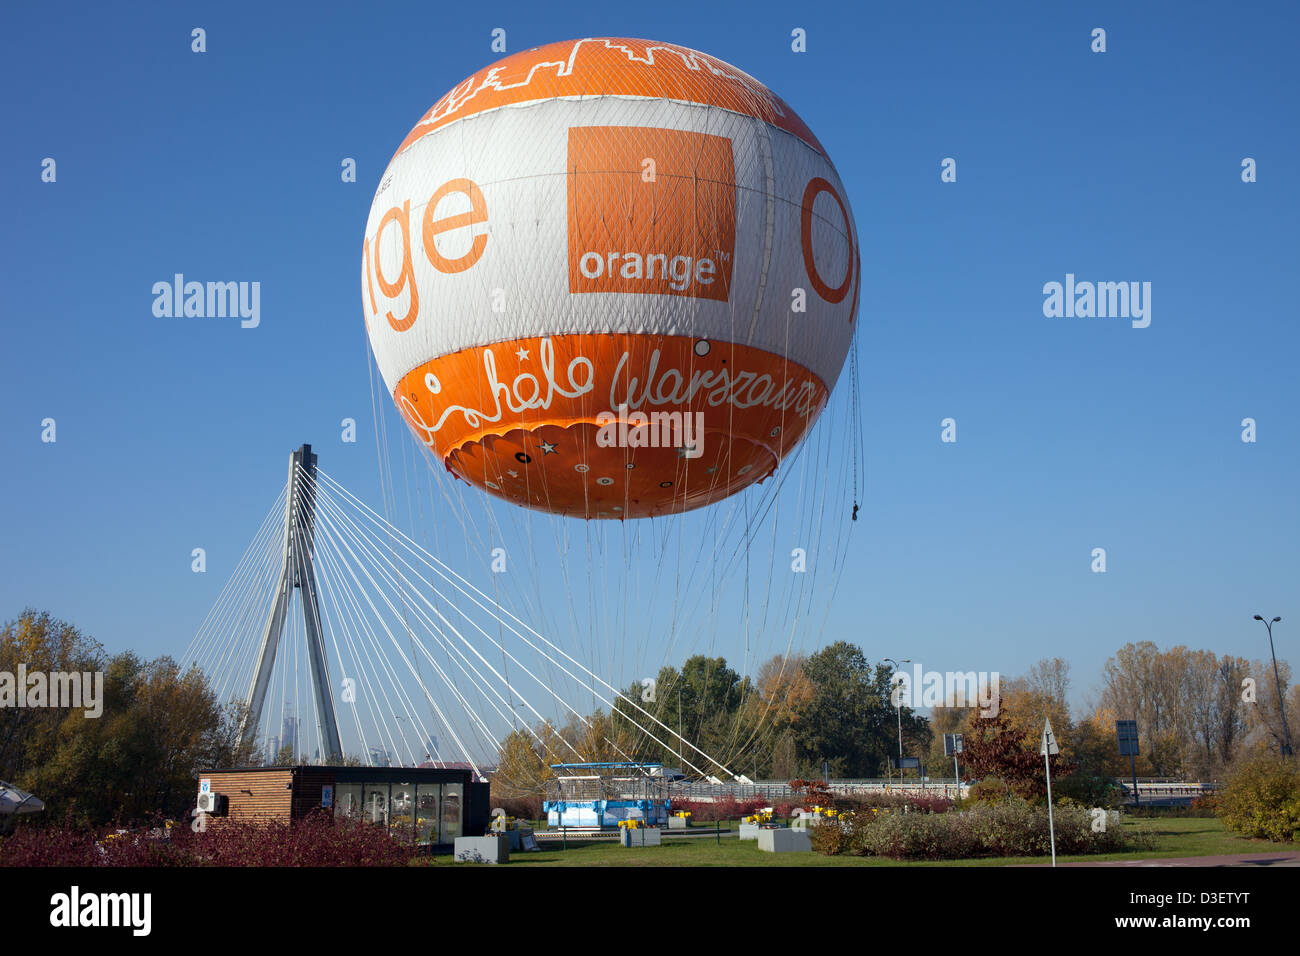 Stacja Orange Balon, hélium ballon à côté du pont Swietokrzyski à Varsovie, Pologne. Banque D'Images